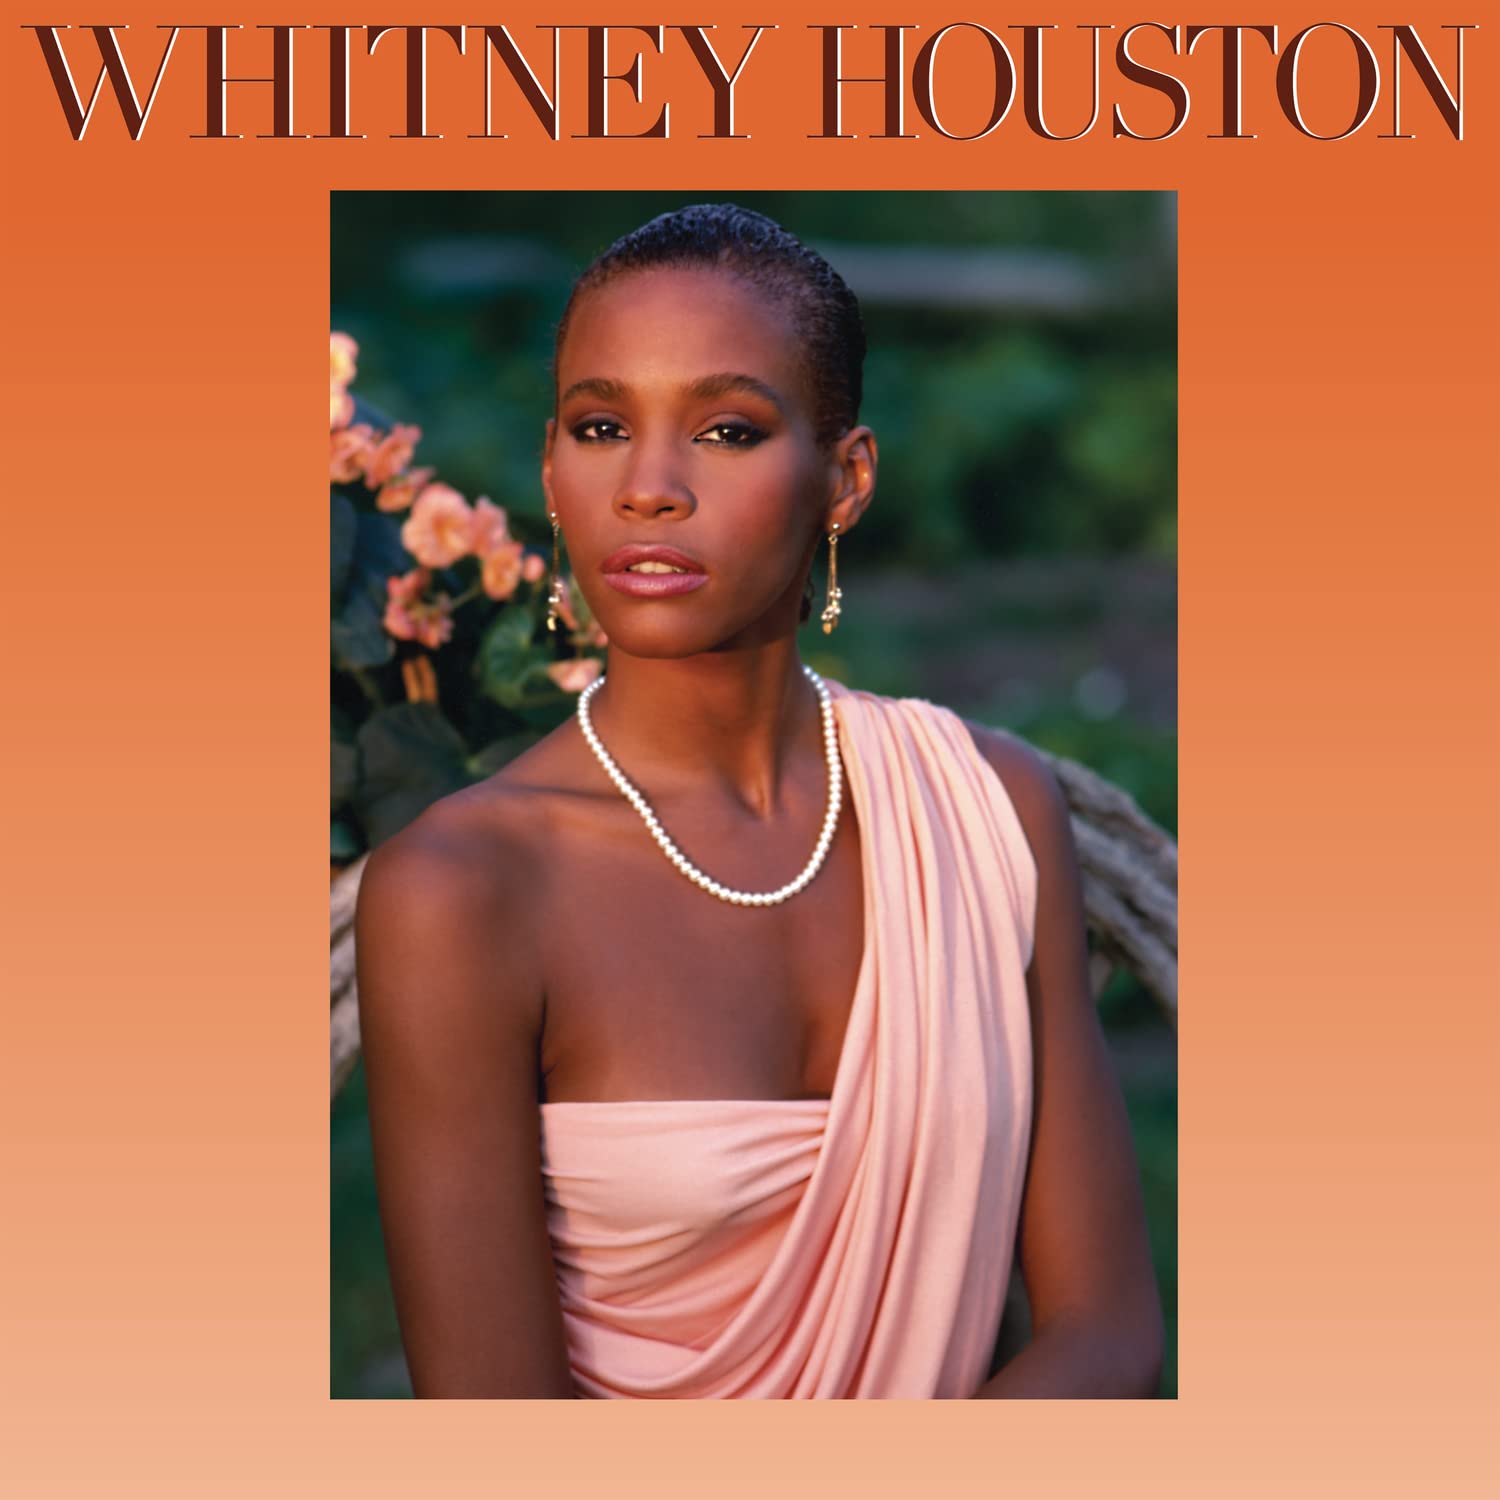 Поп Sony Music Whitney Houston - Whitney Houston (Special Edition Coloured Vinyl LP) хип хоп sony music miley cyrus bangerz coloured vinyl 2lp